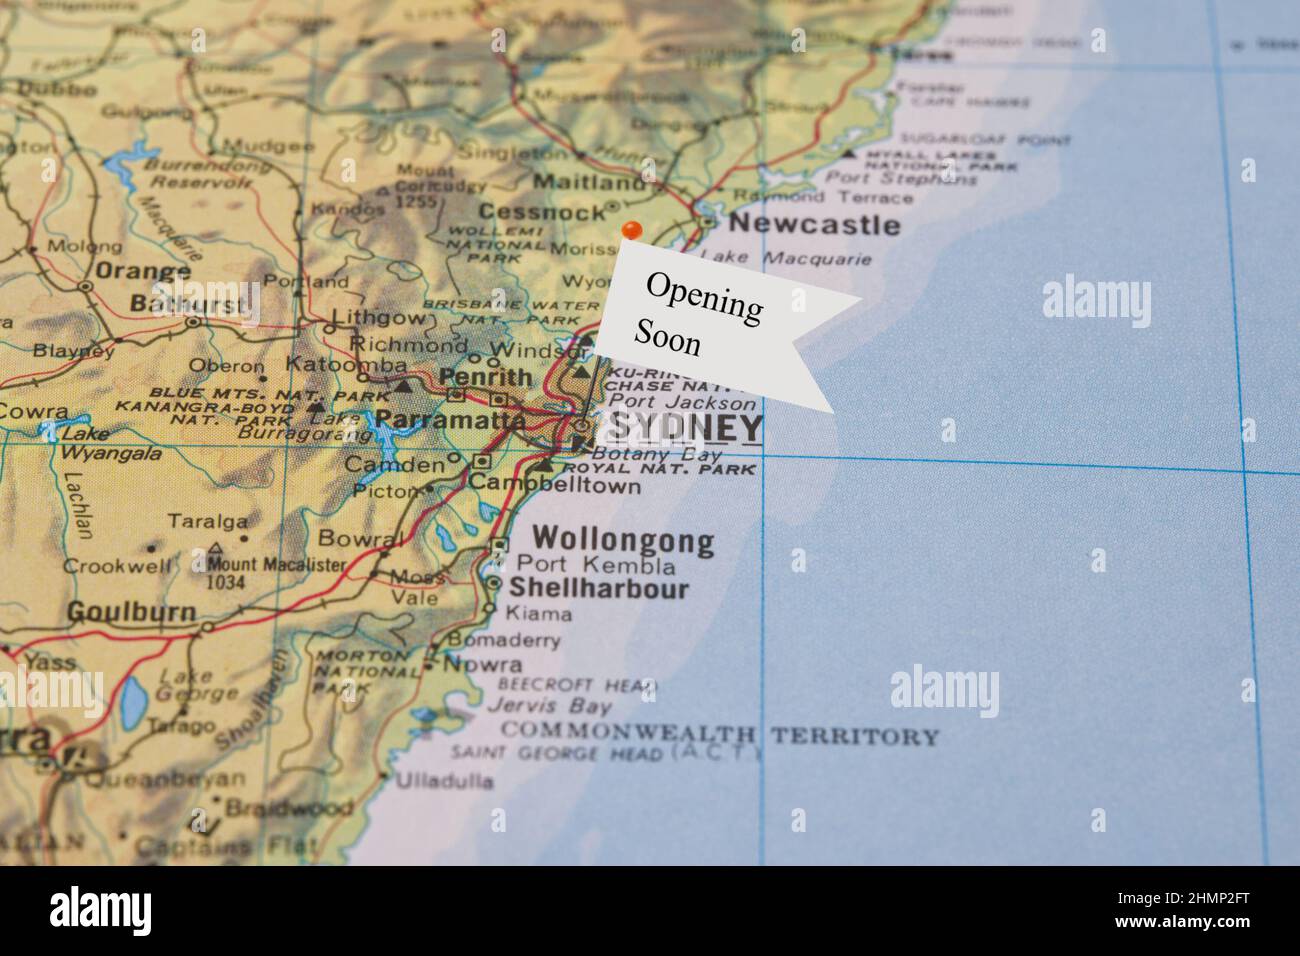 Un primer plano de una pequeña bandera con la frase de apertura pronto se adjunta a un alfiler que se ha colocado en una ilustración de Sydney Australia en un atlas Foto de stock